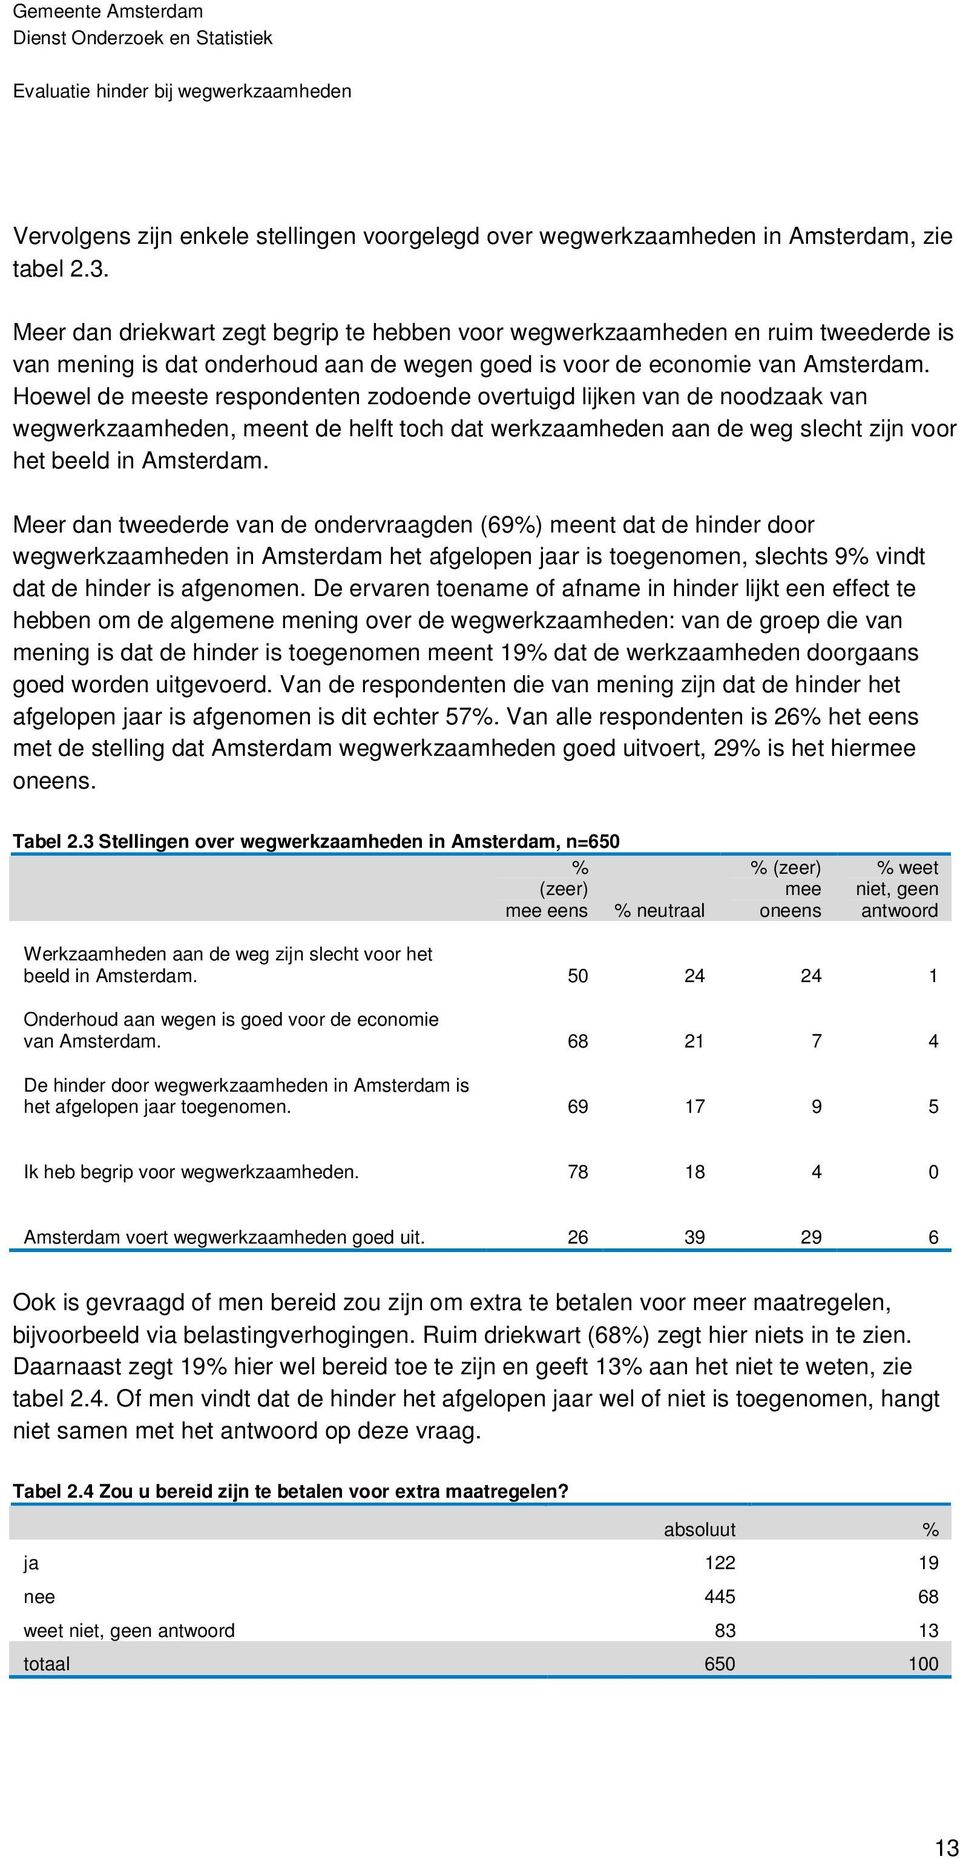 Hoewel de meeste respondenten zodoende overtuigd lijken van de noodzaak van wegwerkzaamheden, meent de helft toch dat werkzaamheden aan de weg slecht zijn voor het beeld in Amsterdam.